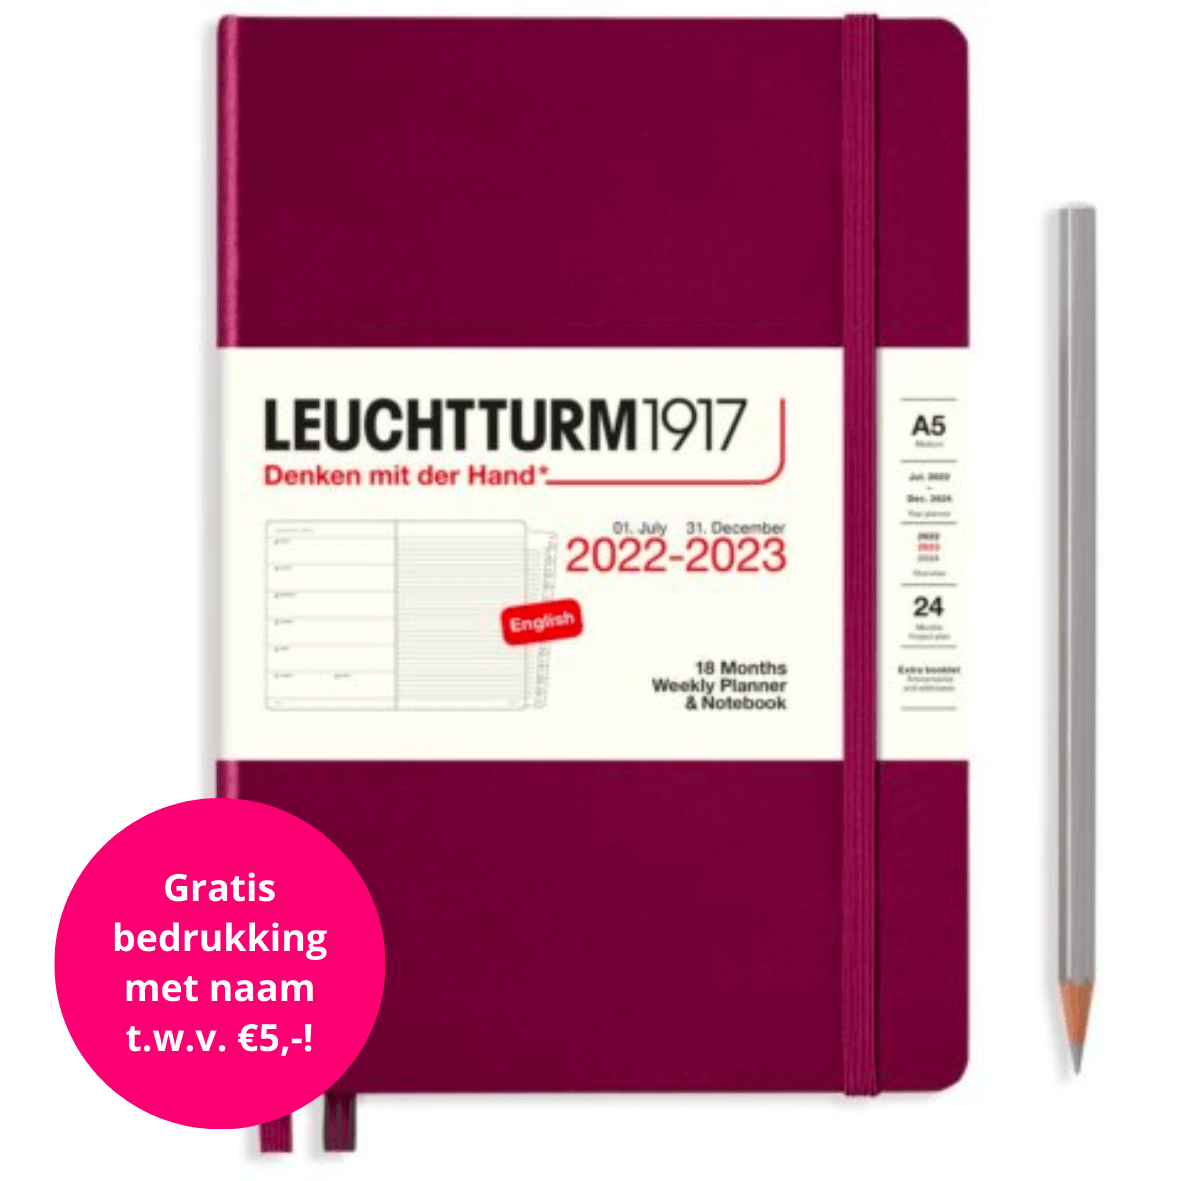 aLeuchtturm1917-Weekly-Planner-Notebook-18-Months-2022-2023-Port-Red